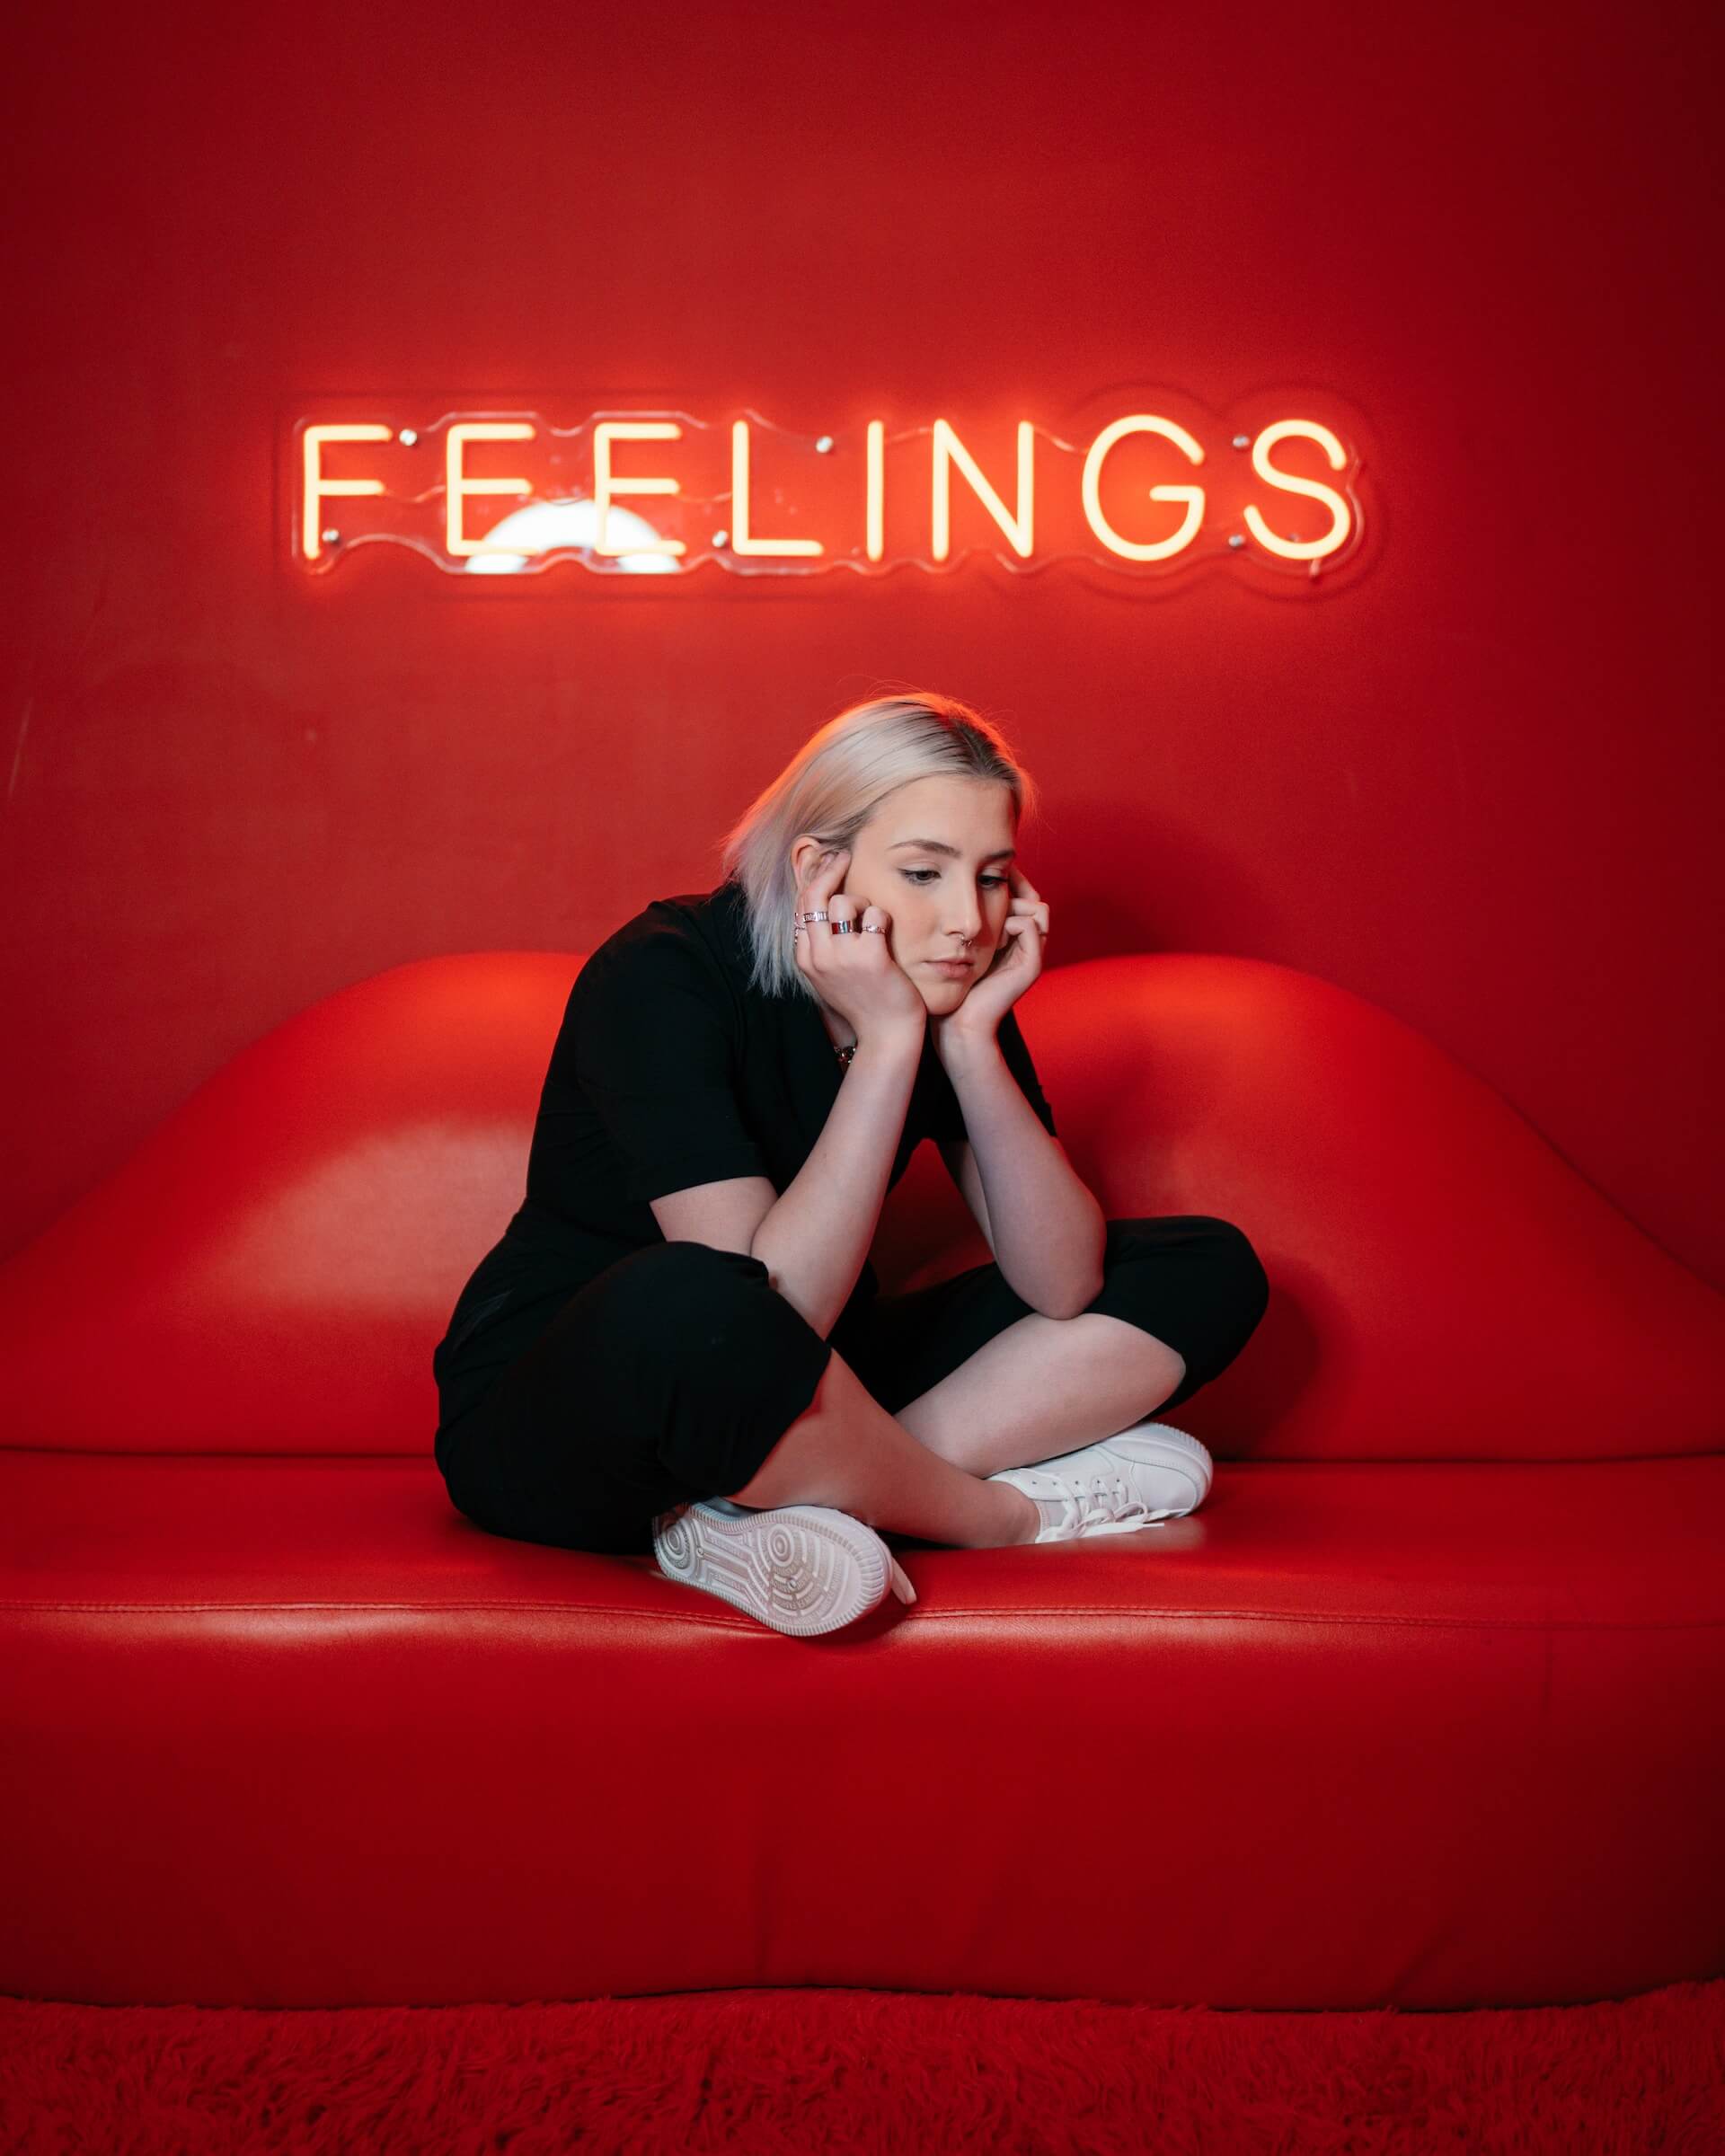 Czerwony neon Feelings nad smutną dziewczyną siedzącą na czerwonej kanapie.